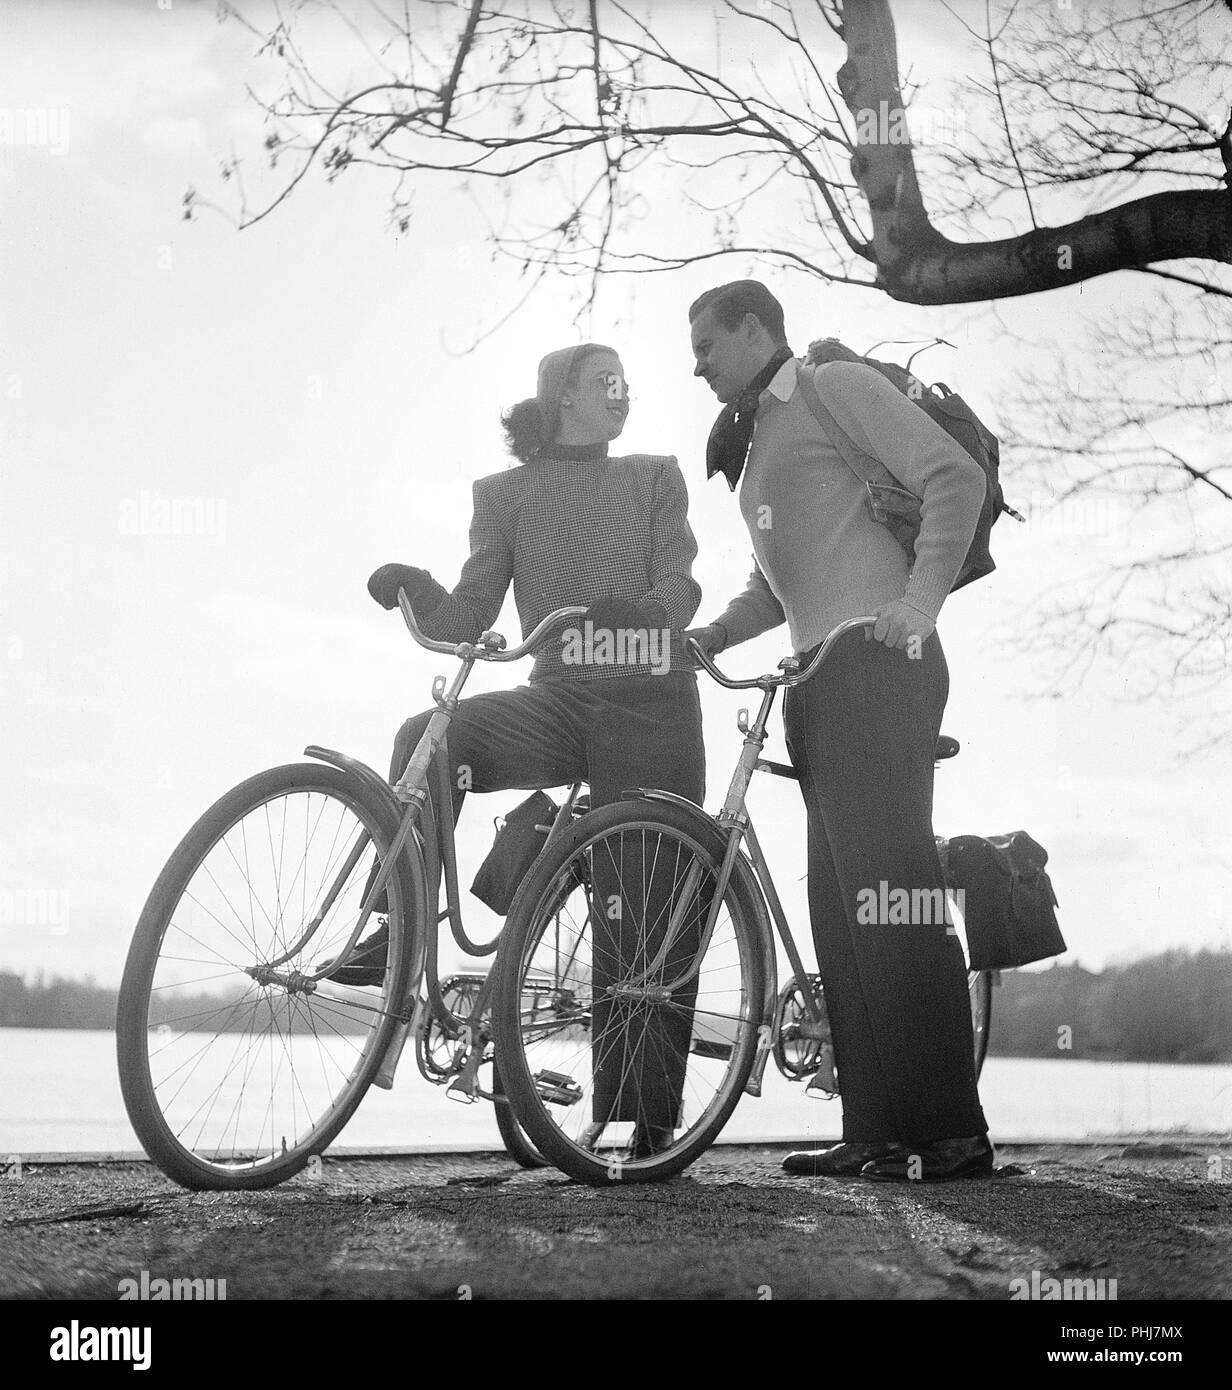 1940s giovane sulle biciclette. Una giovane coppia è fuori in un tour sulle loro biciclette su una soleggiata giornata di primavera. Essi hanno pratiche buste attaccata alla rastrelliera delle biciclette in cui essi potrebbero trasportare il picnic food. La Svezia 1947. Foto Kristoffersson AB11-10 Foto Stock